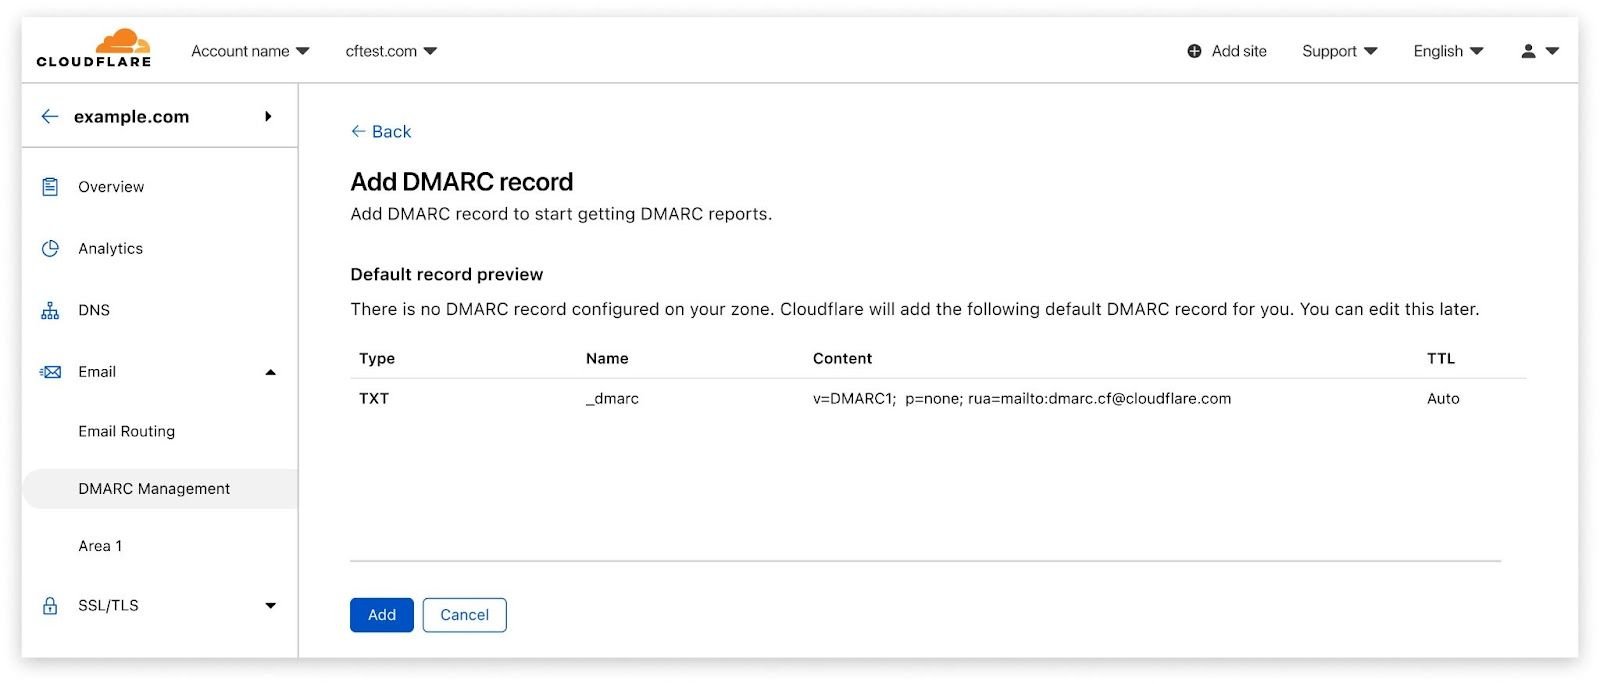 Hay una vista previa del registro DMARC creado con este registro RUA